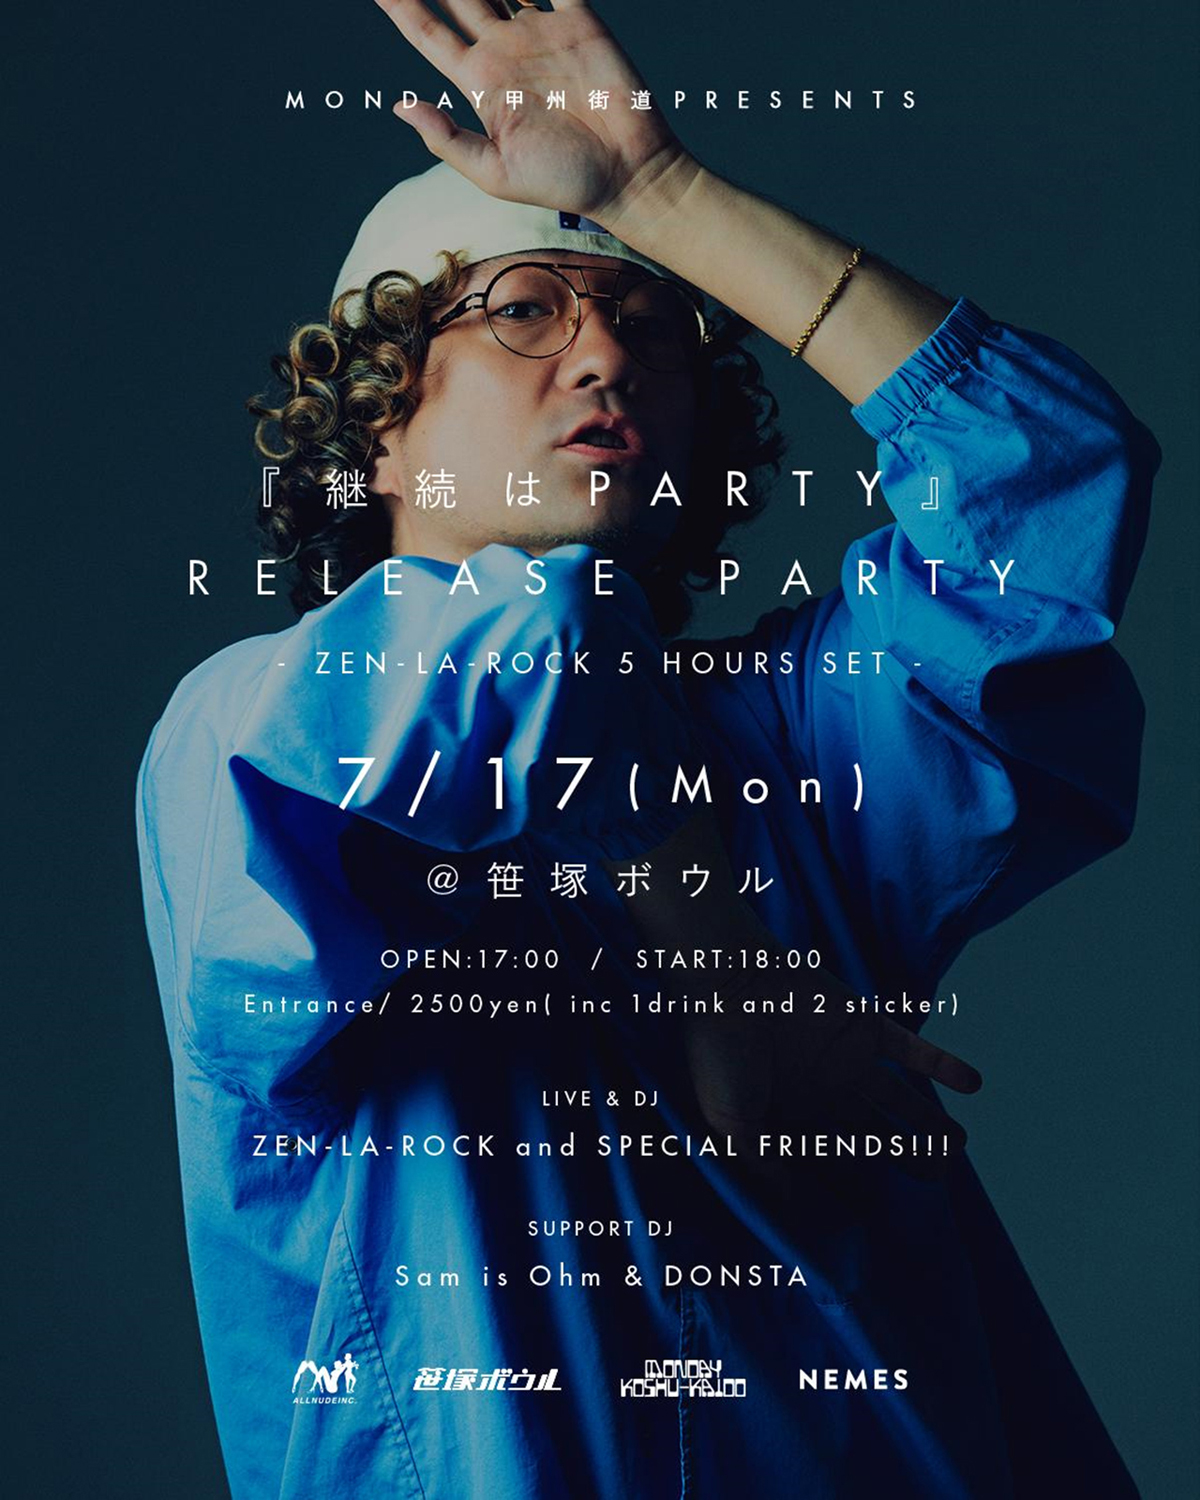  MONDAY甲州街道 Presents "『継続はPARTY』Release Party" ZEN-LA-ROCK 5 Hours Set